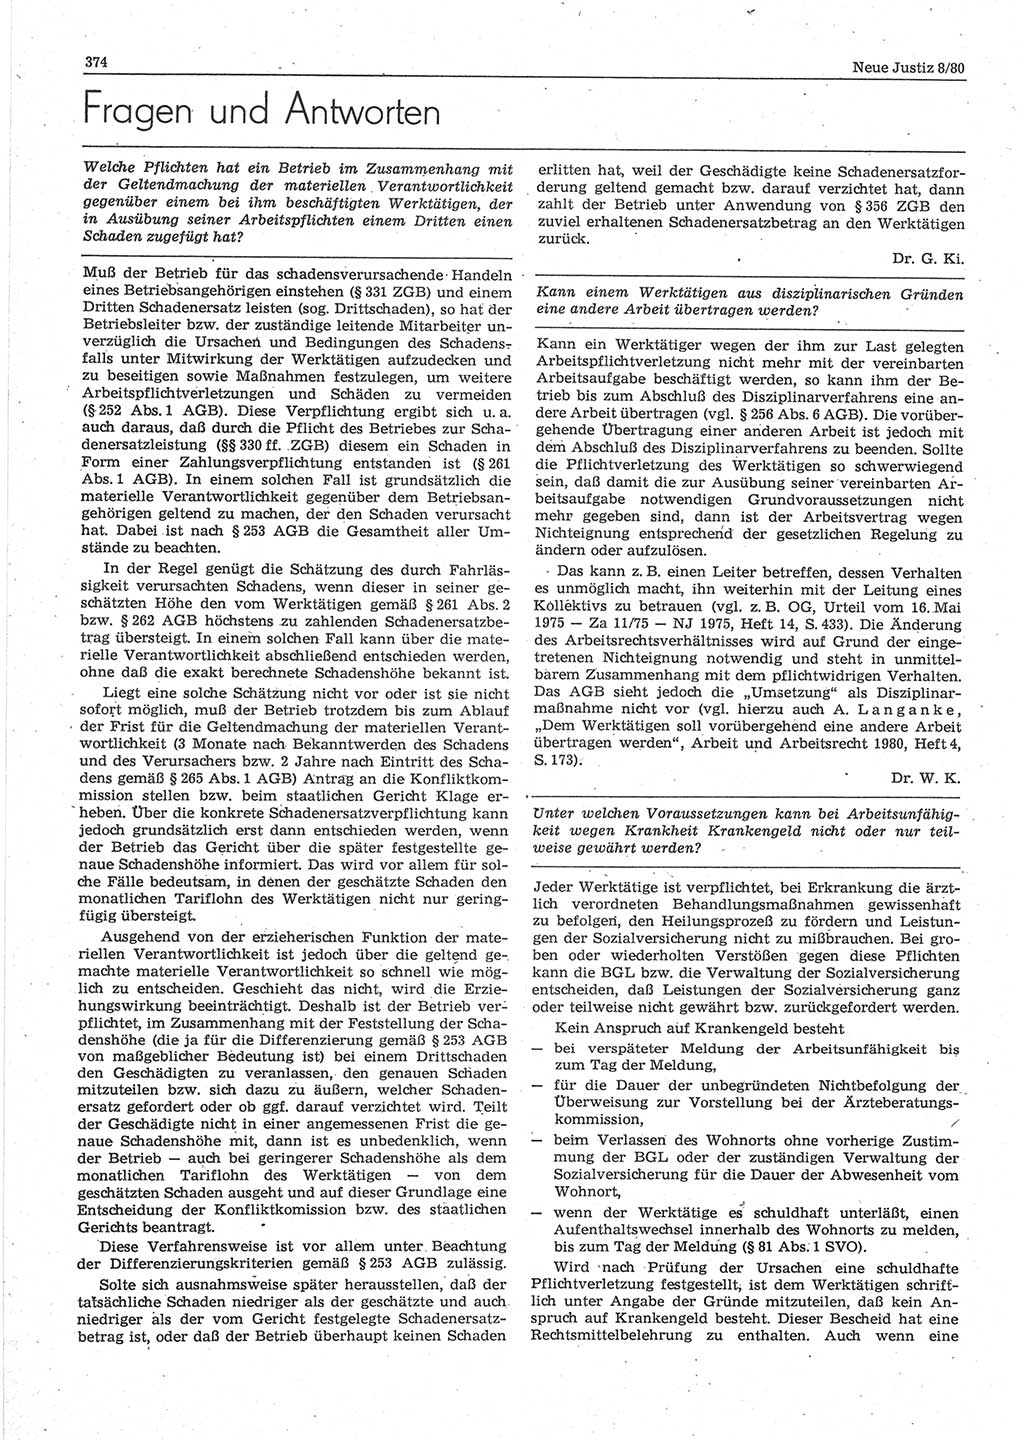 Neue Justiz (NJ), Zeitschrift für sozialistisches Recht und Gesetzlichkeit [Deutsche Demokratische Republik (DDR)], 34. Jahrgang 1980, Seite 374 (NJ DDR 1980, S. 374)